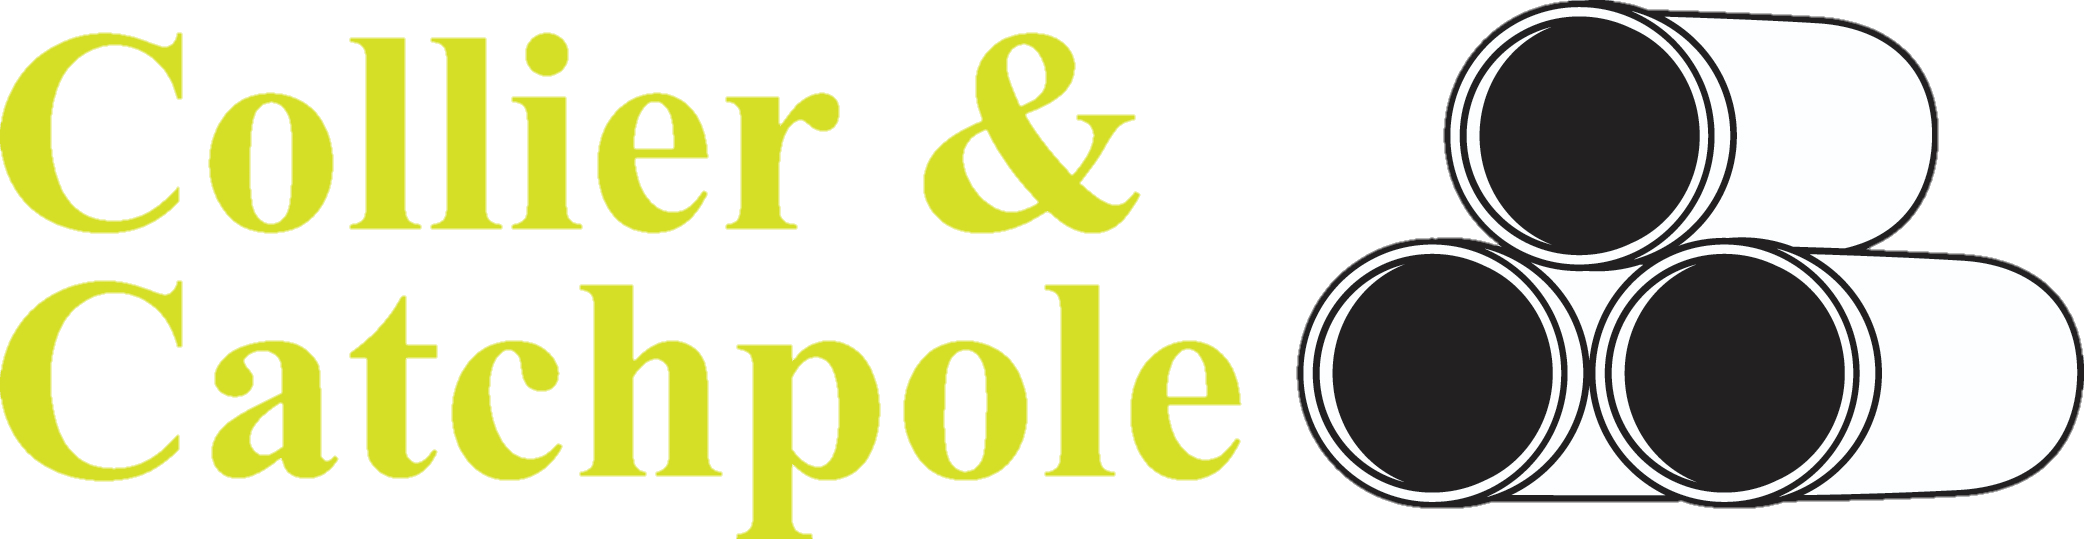 Collier & Catchpole – Ipswich Logo